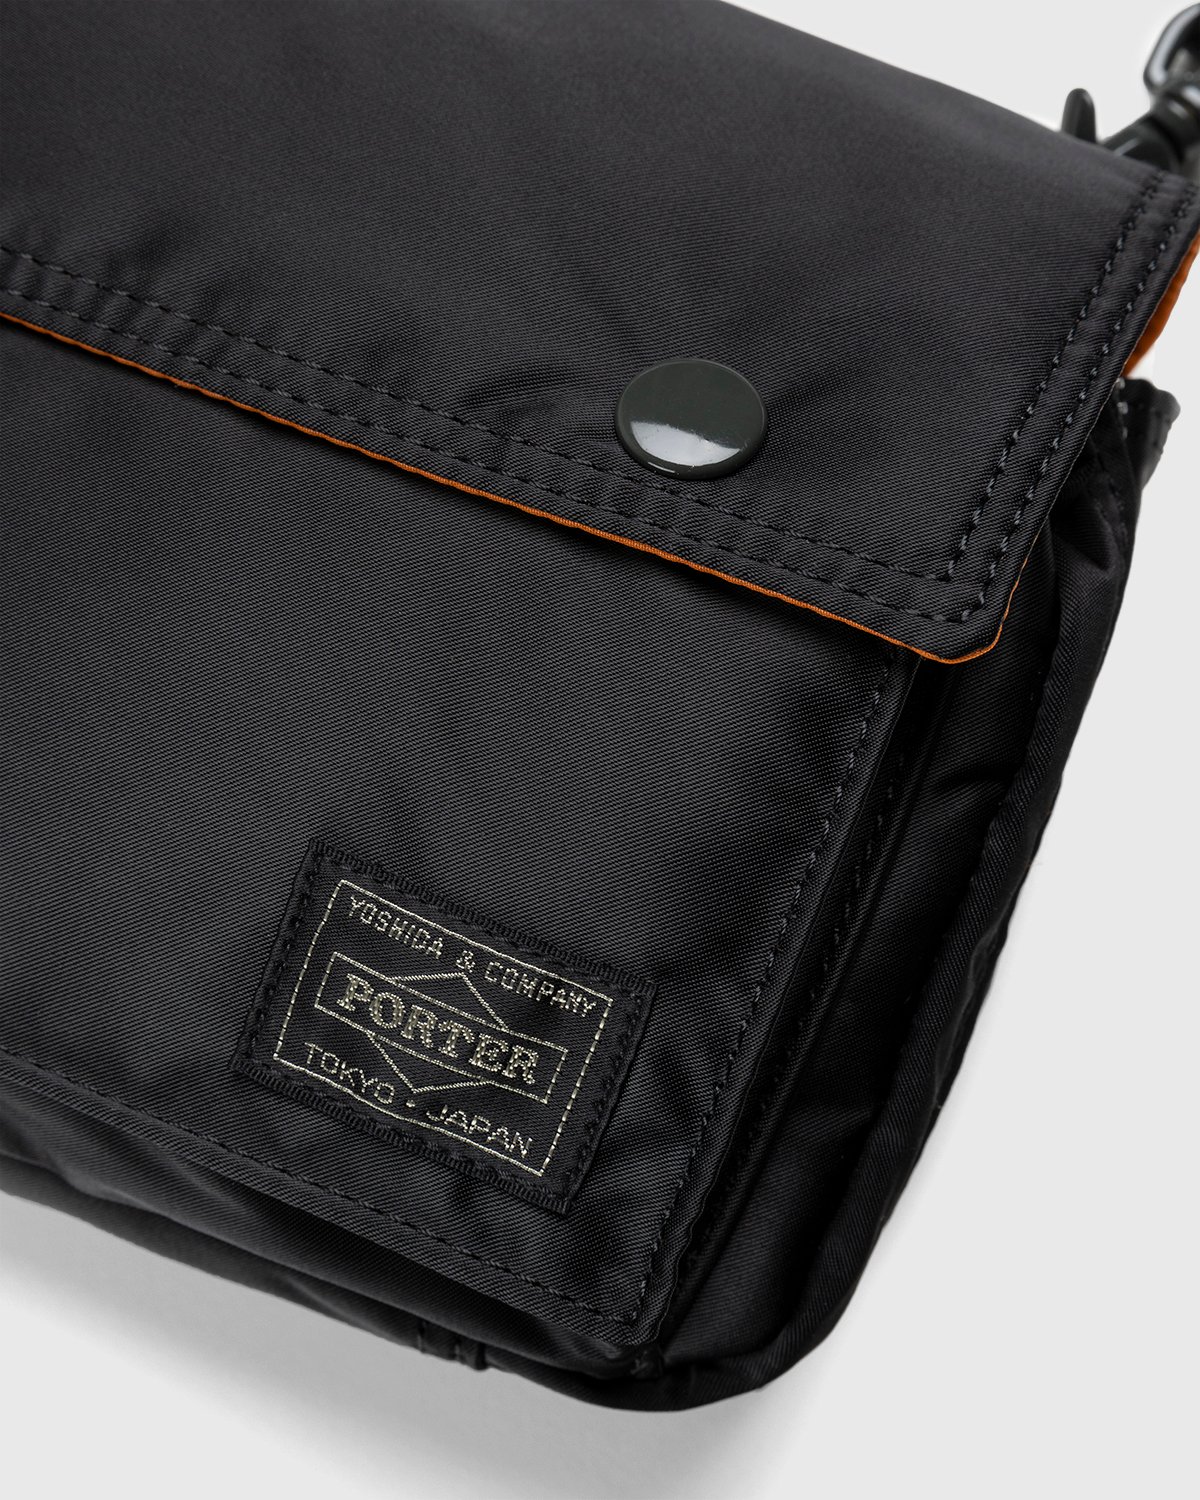 Porter-Yoshida & Co. – Tanker Clip Shoulder Bag Black 